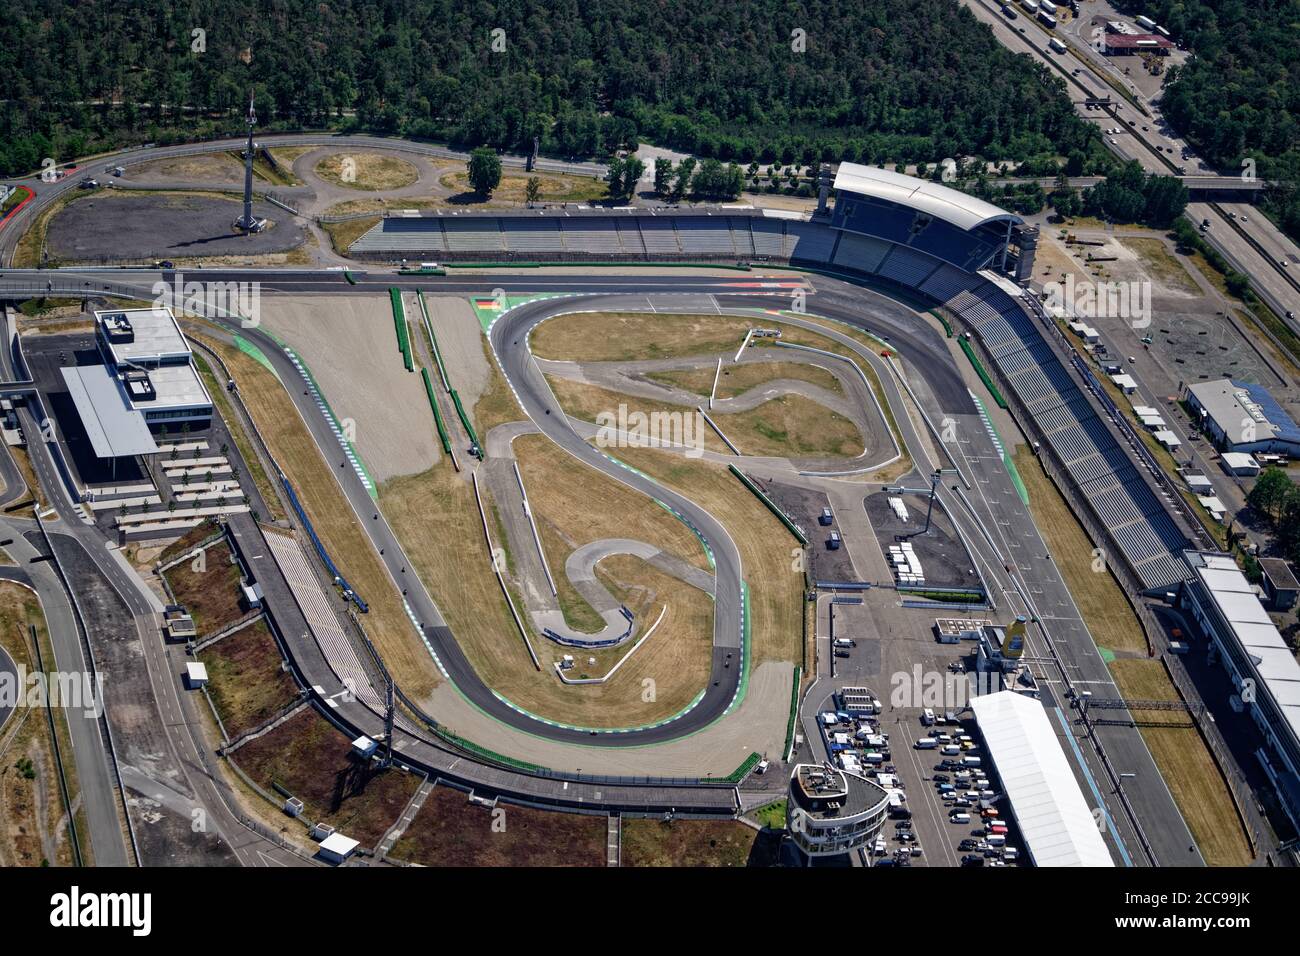 Vue aérienne au Hockenheim-Ring, célèbre circuit de course où se déroule le Grand Prix d'Allemagne tous les deux ans. Le Motodrom accueille 120,000 visiteurs. Banque D'Images